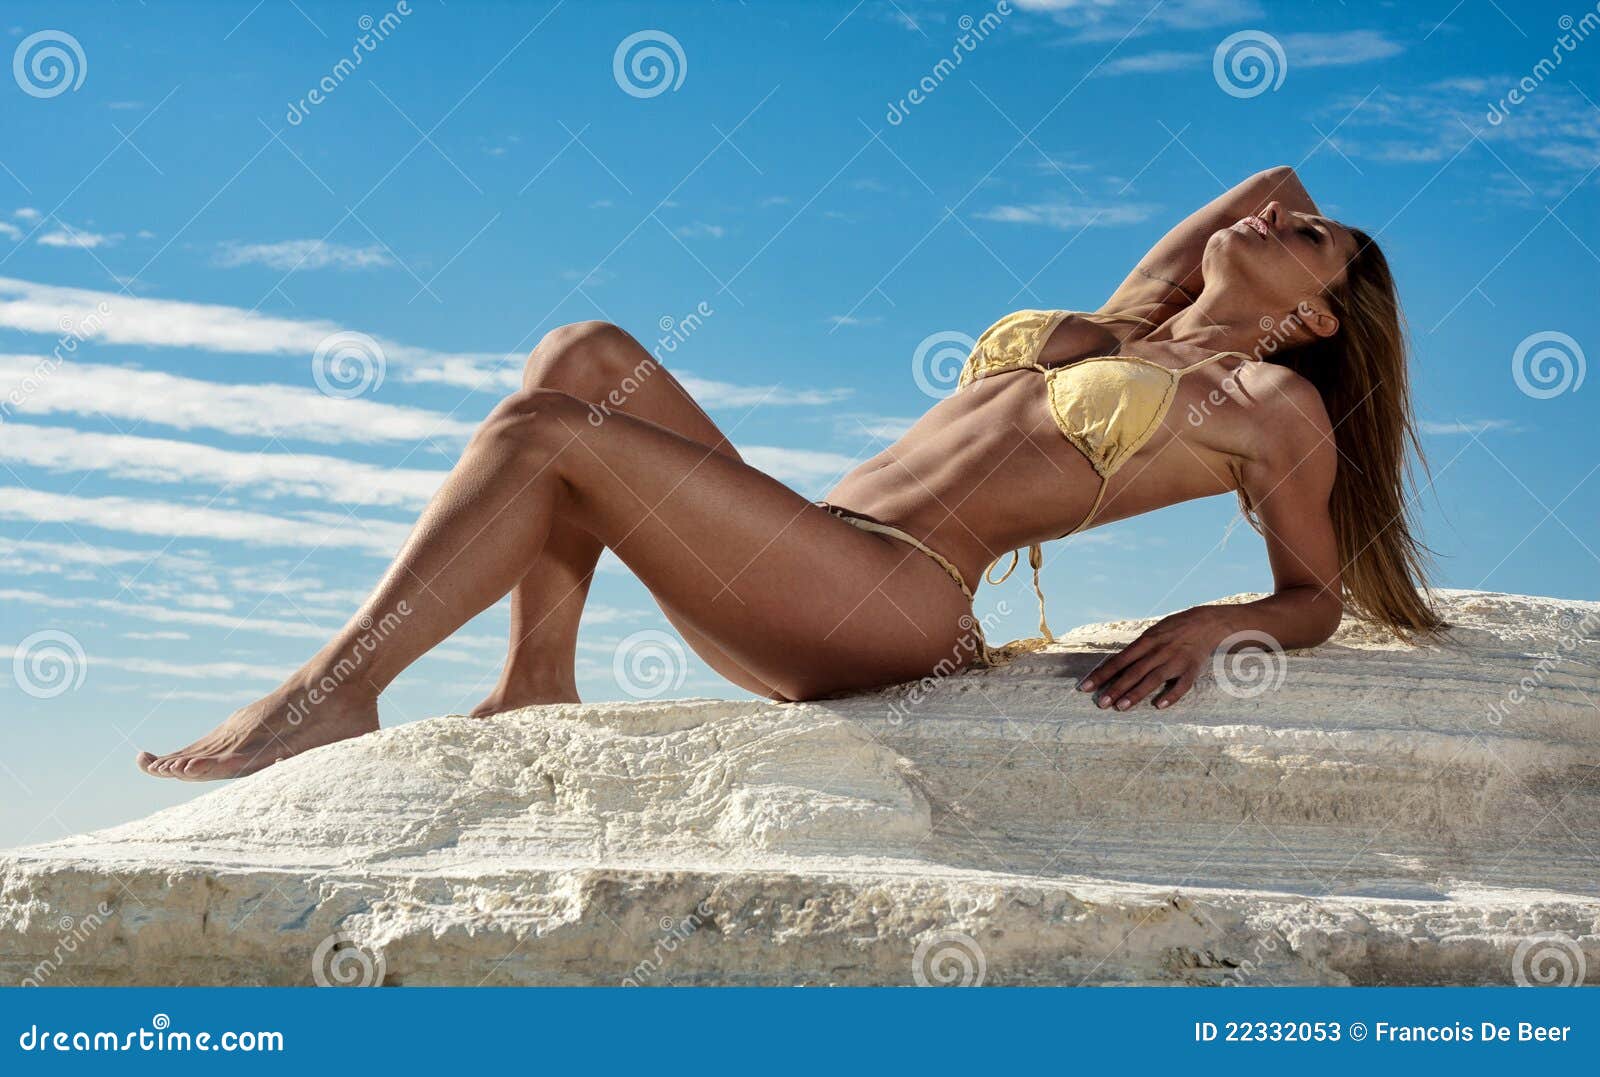 Sexy woman in thong bikini on a backgrou, Stock Video